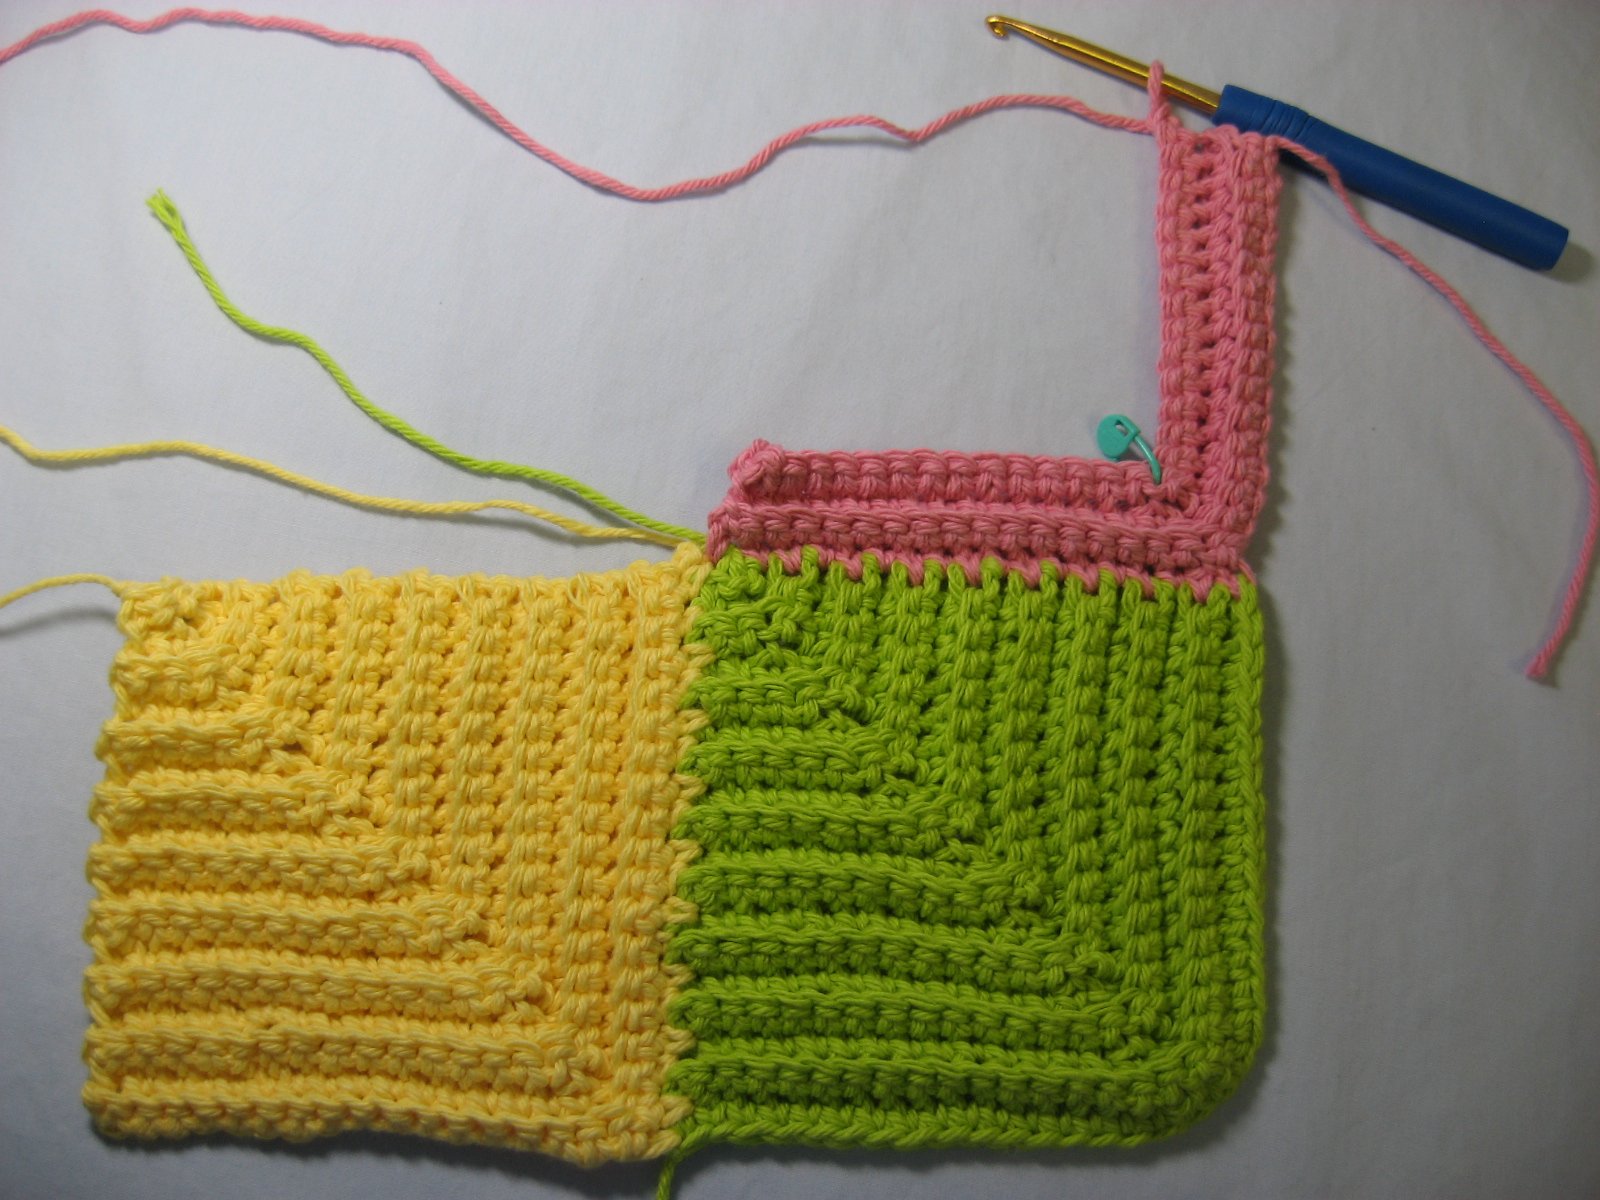 Crochet mitered square blanket